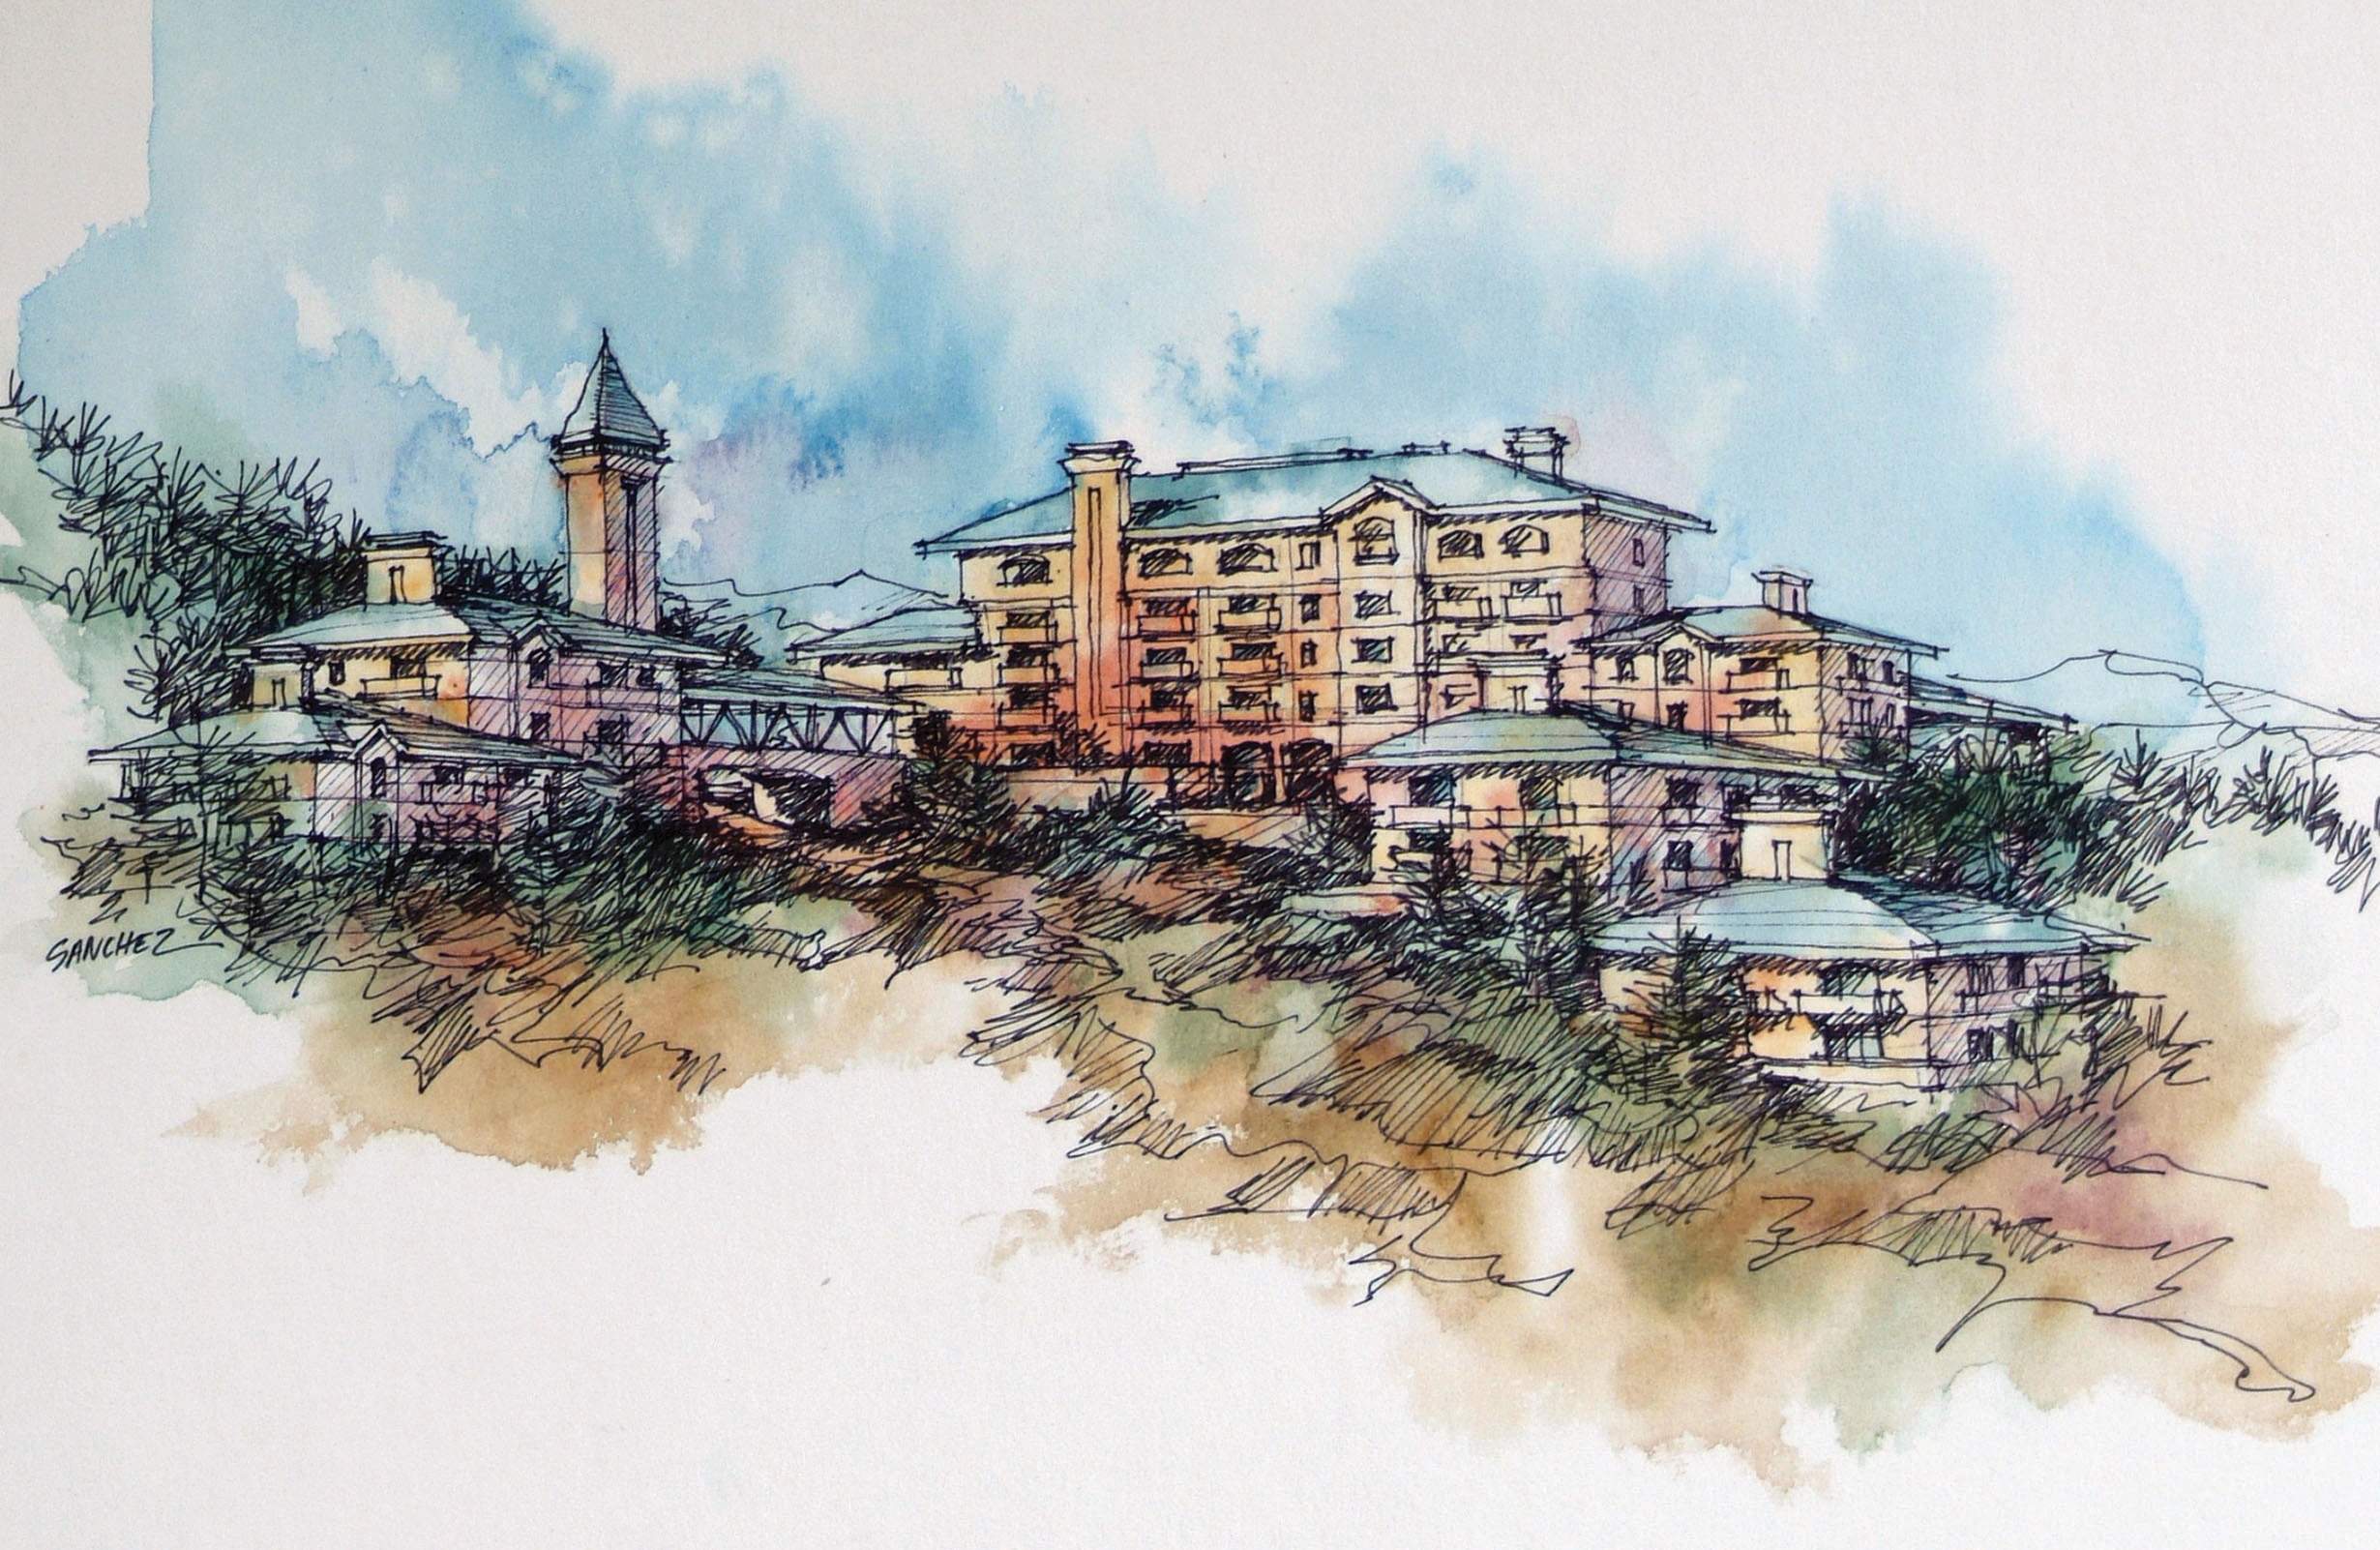 Hillside development freehand drawing in watercolor